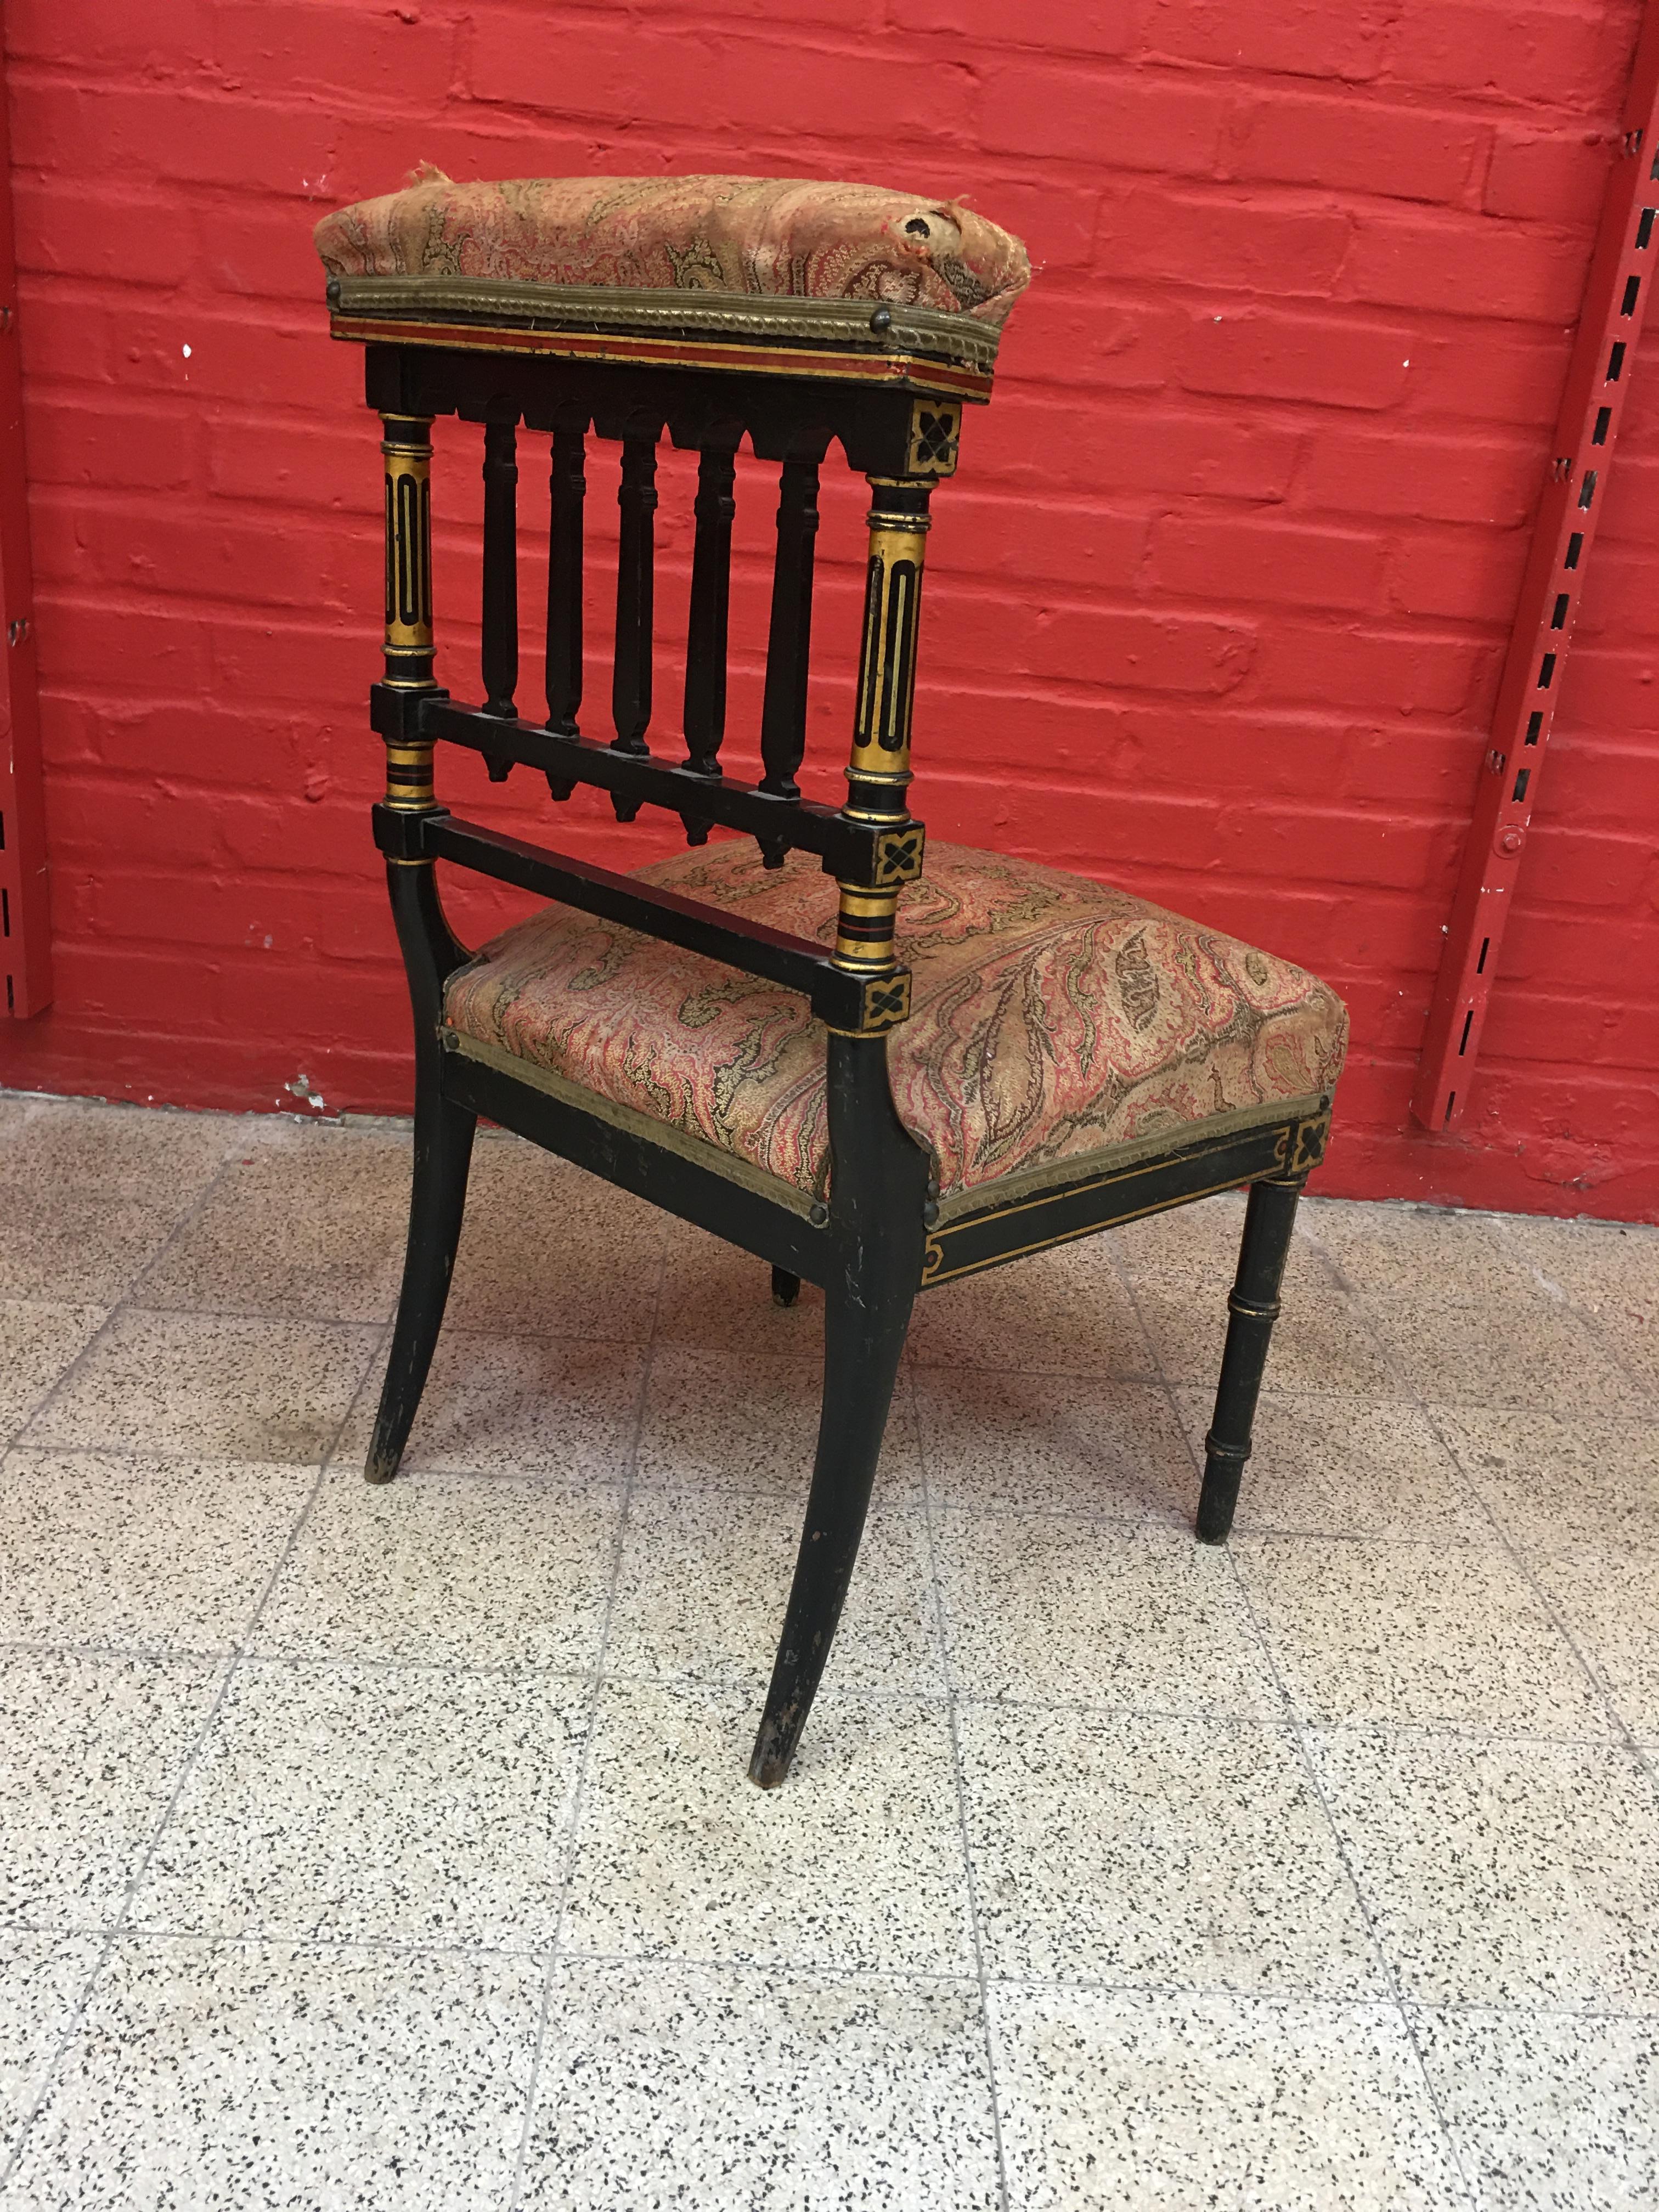 napoleon's chair